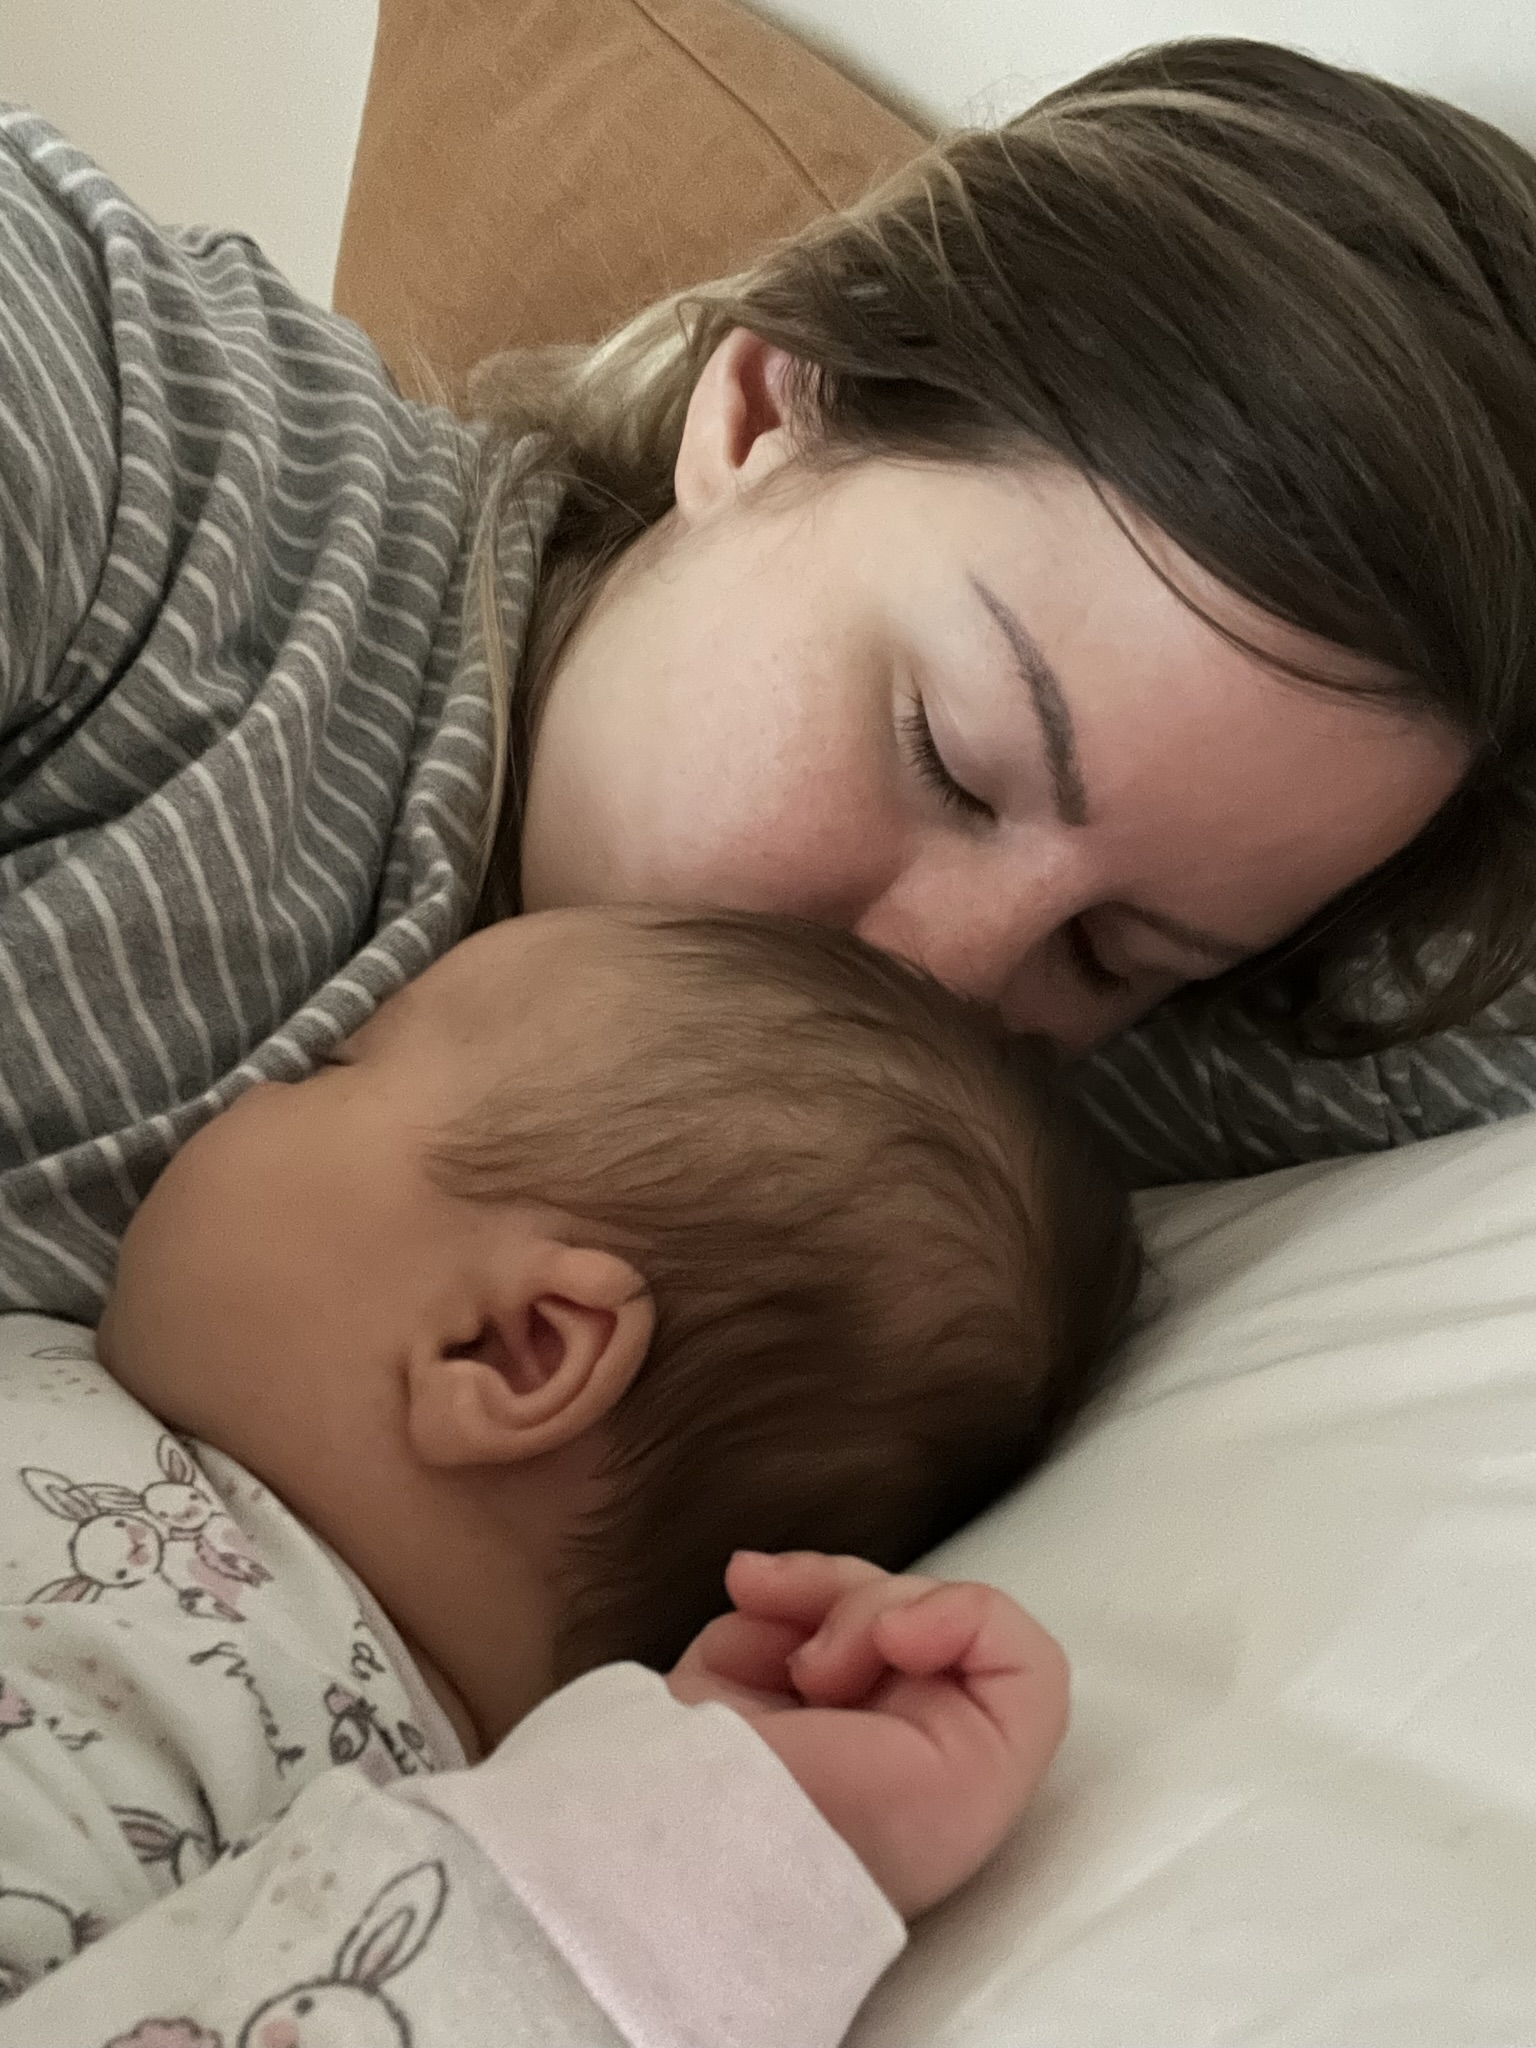 ”Jag visste att jag älskade mina barn, men jag orkade inte vara deras mamma” – Louise berättelse om postpartumdepression och D-mer